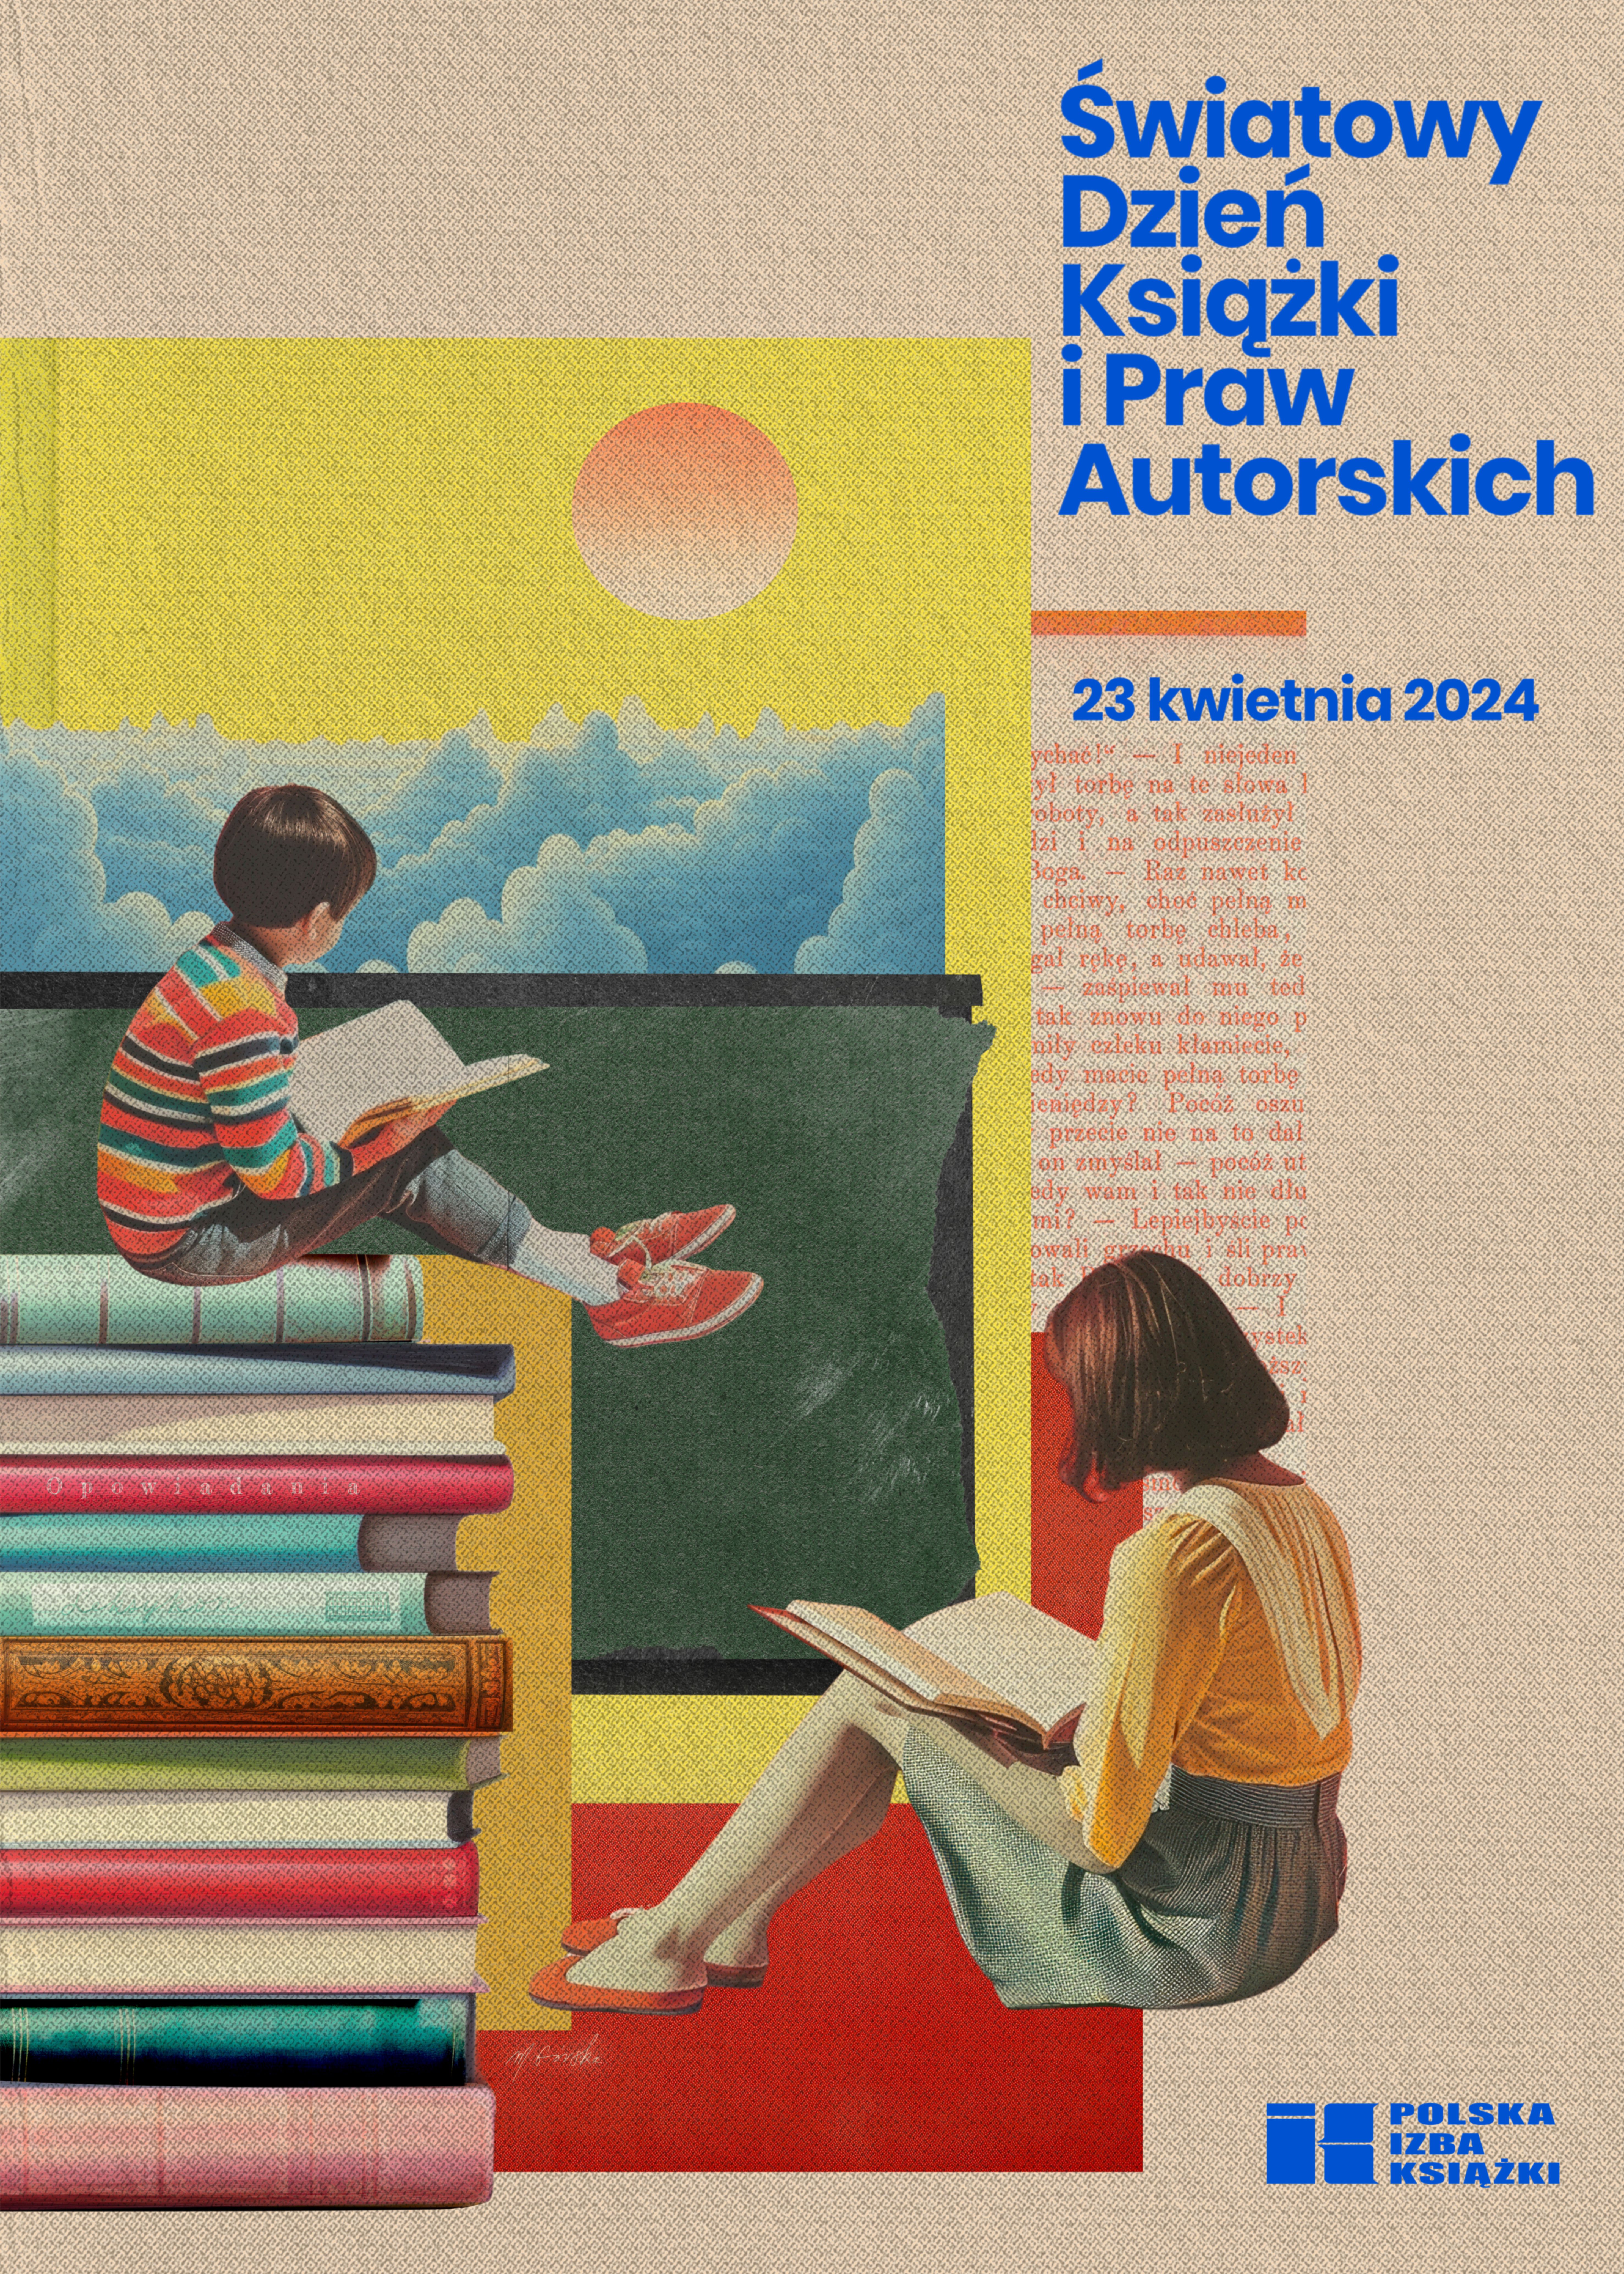 plakat promujący Światowy Dzień Książki i Praw Autorskich przedstawiający dziewczynkę i chłopca czytających książki